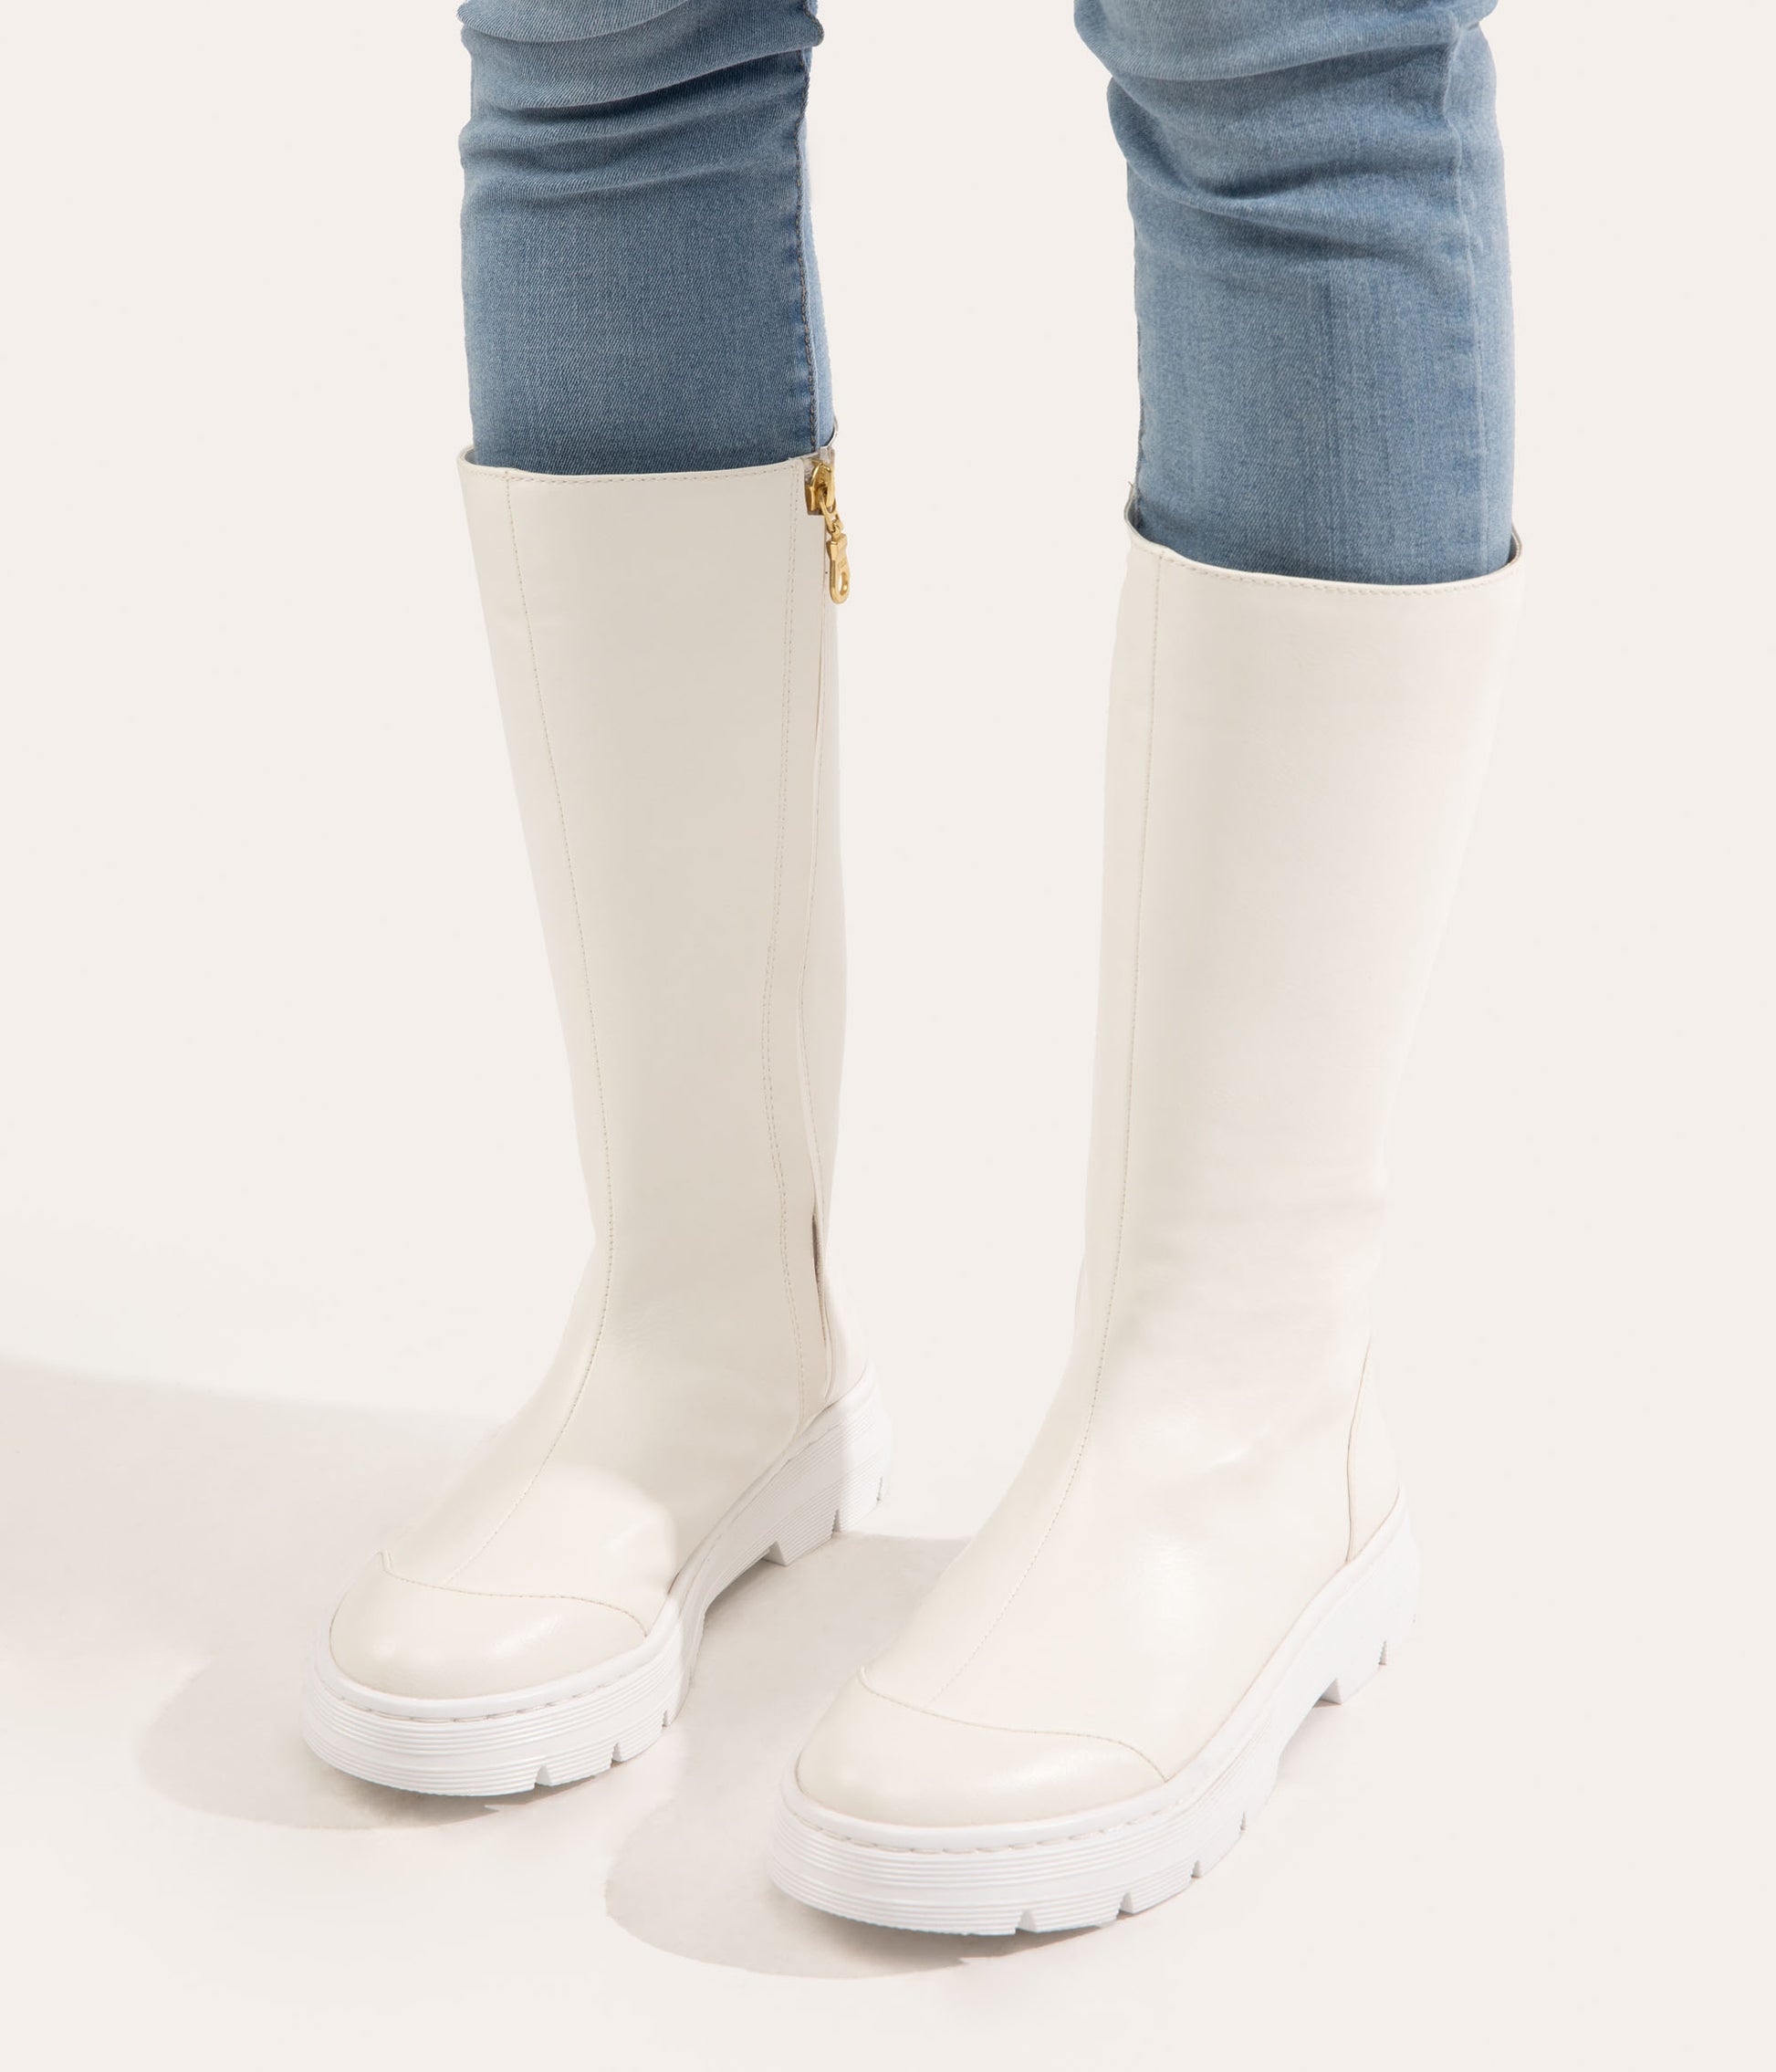 OTOKI Women's Tall Vegan Rain Boots